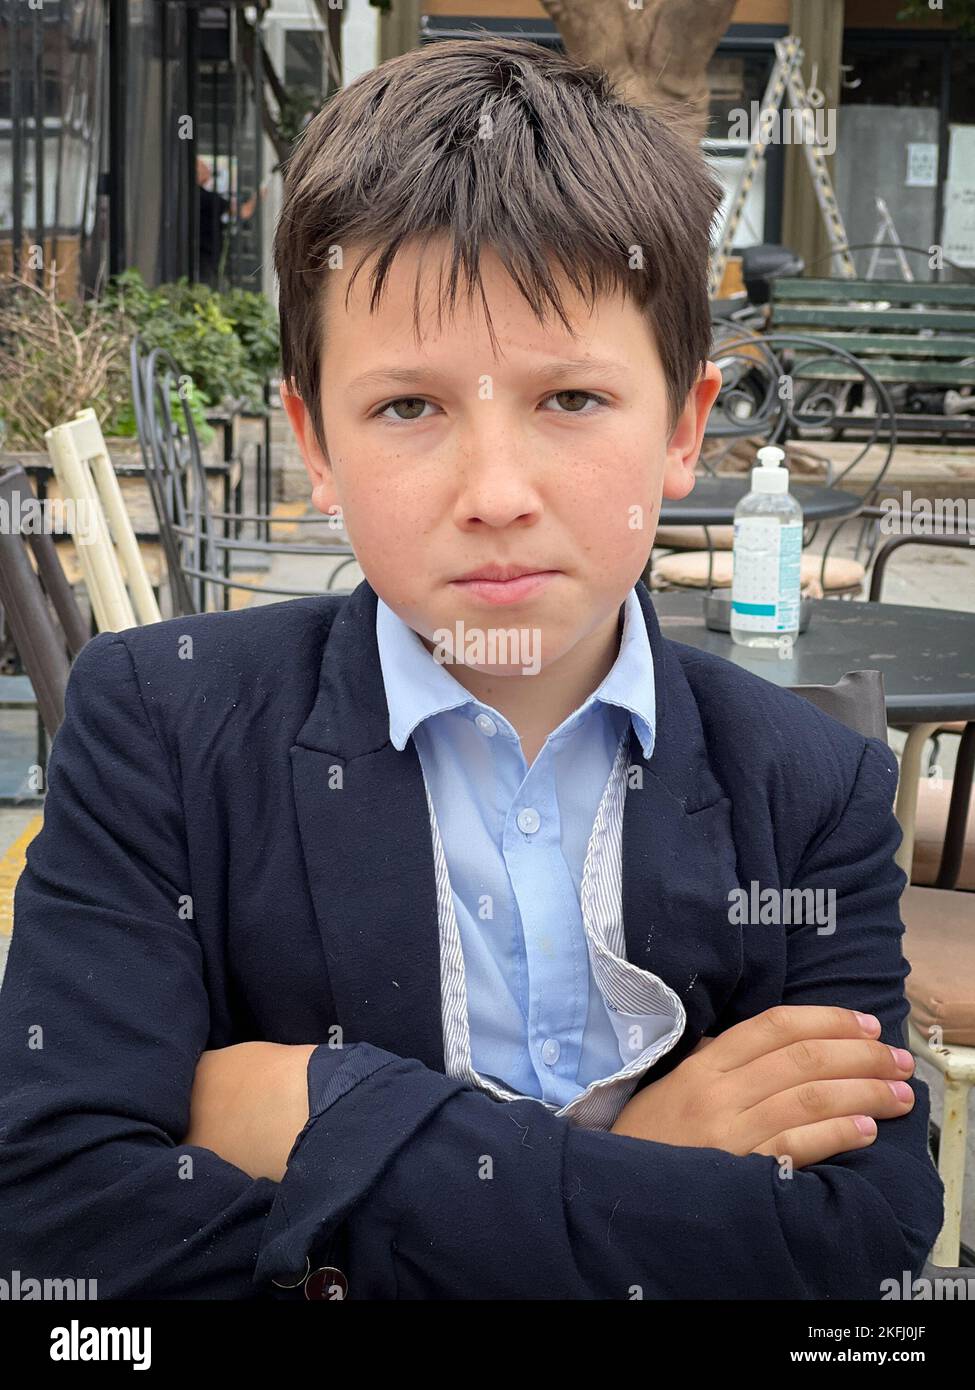 Nahaufnahme eines ernsthaften kaukasischen Jungen in Anzug mit gekreuzten Armen, der im Restaurant auf dem Bürgersteig sitzt Stockfoto